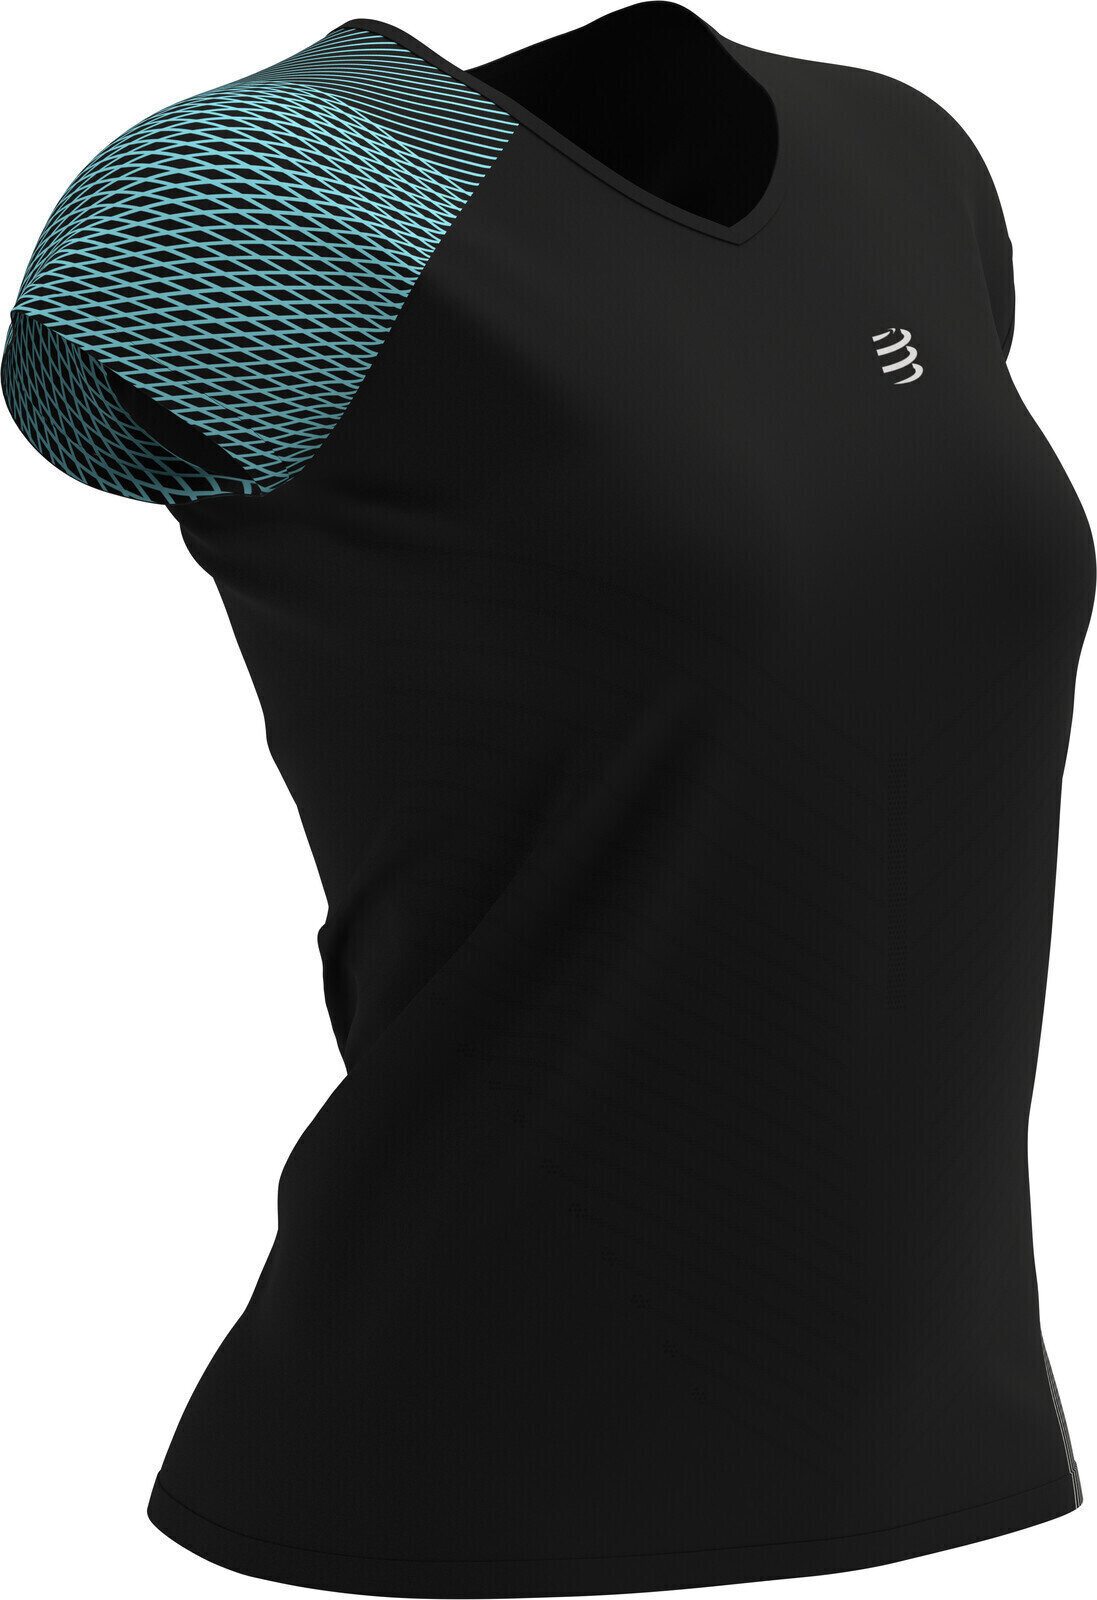 Majica za trčanje s kratkim rukavom
 Compressport Performance T-Shirt Black L Majica za trčanje s kratkim rukavom